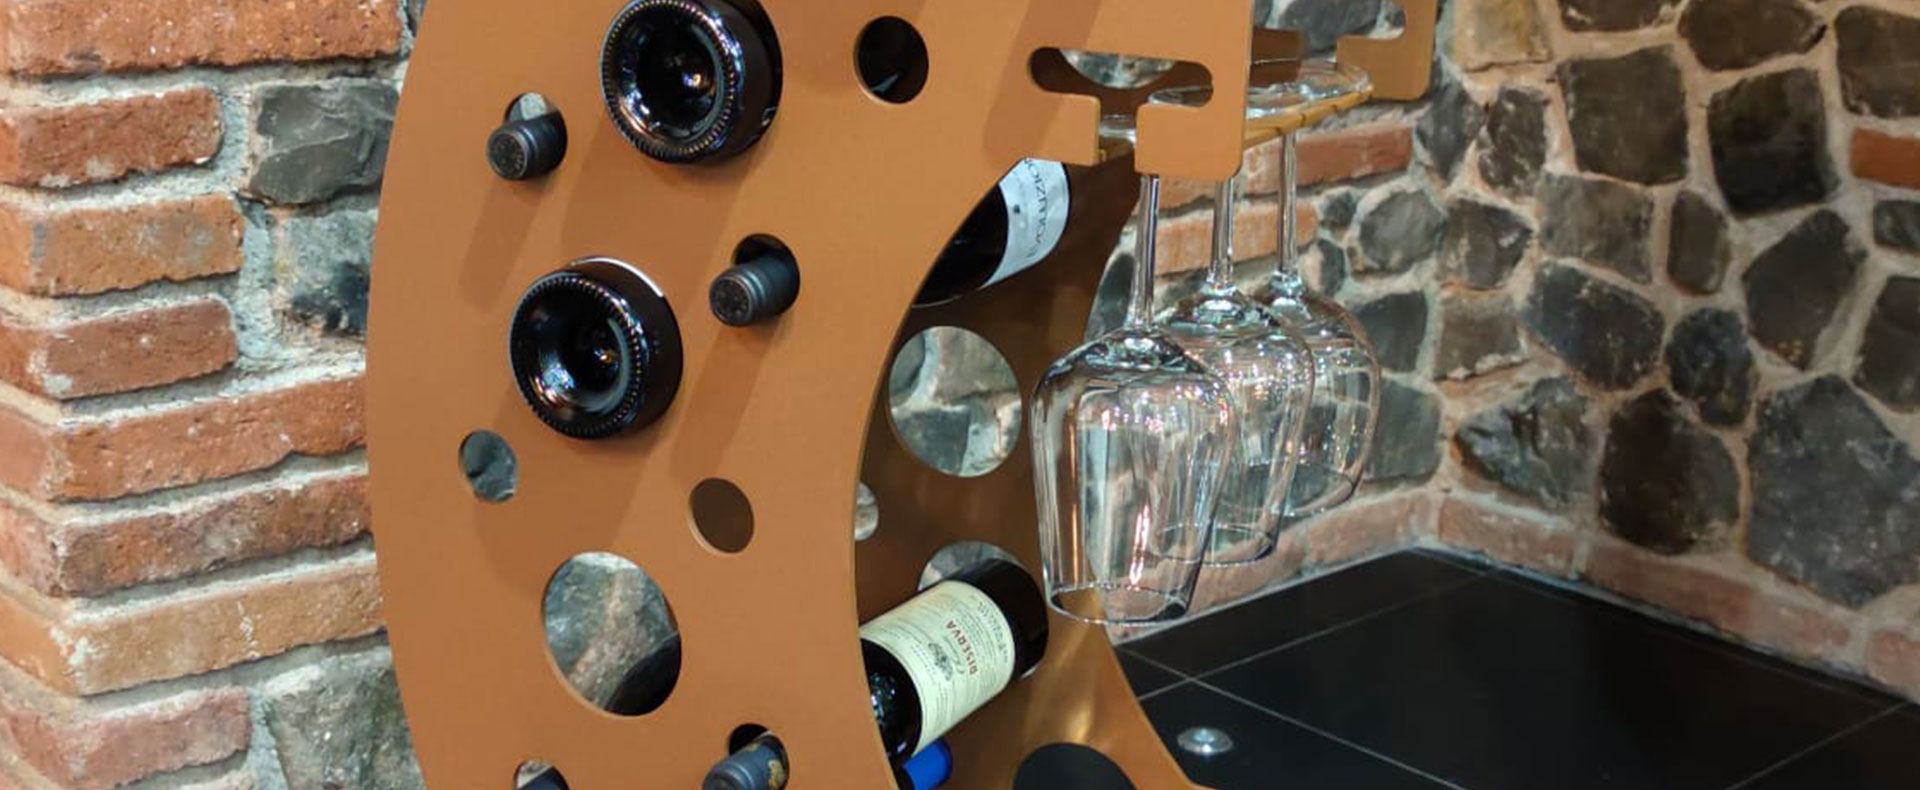 1-cantinetta-vini-porta-bottiglie-vini-industrial-style-stile-industriale-forma-personalizzabile-orsoloni-design-velletri-lariano-roma-provincia-latina